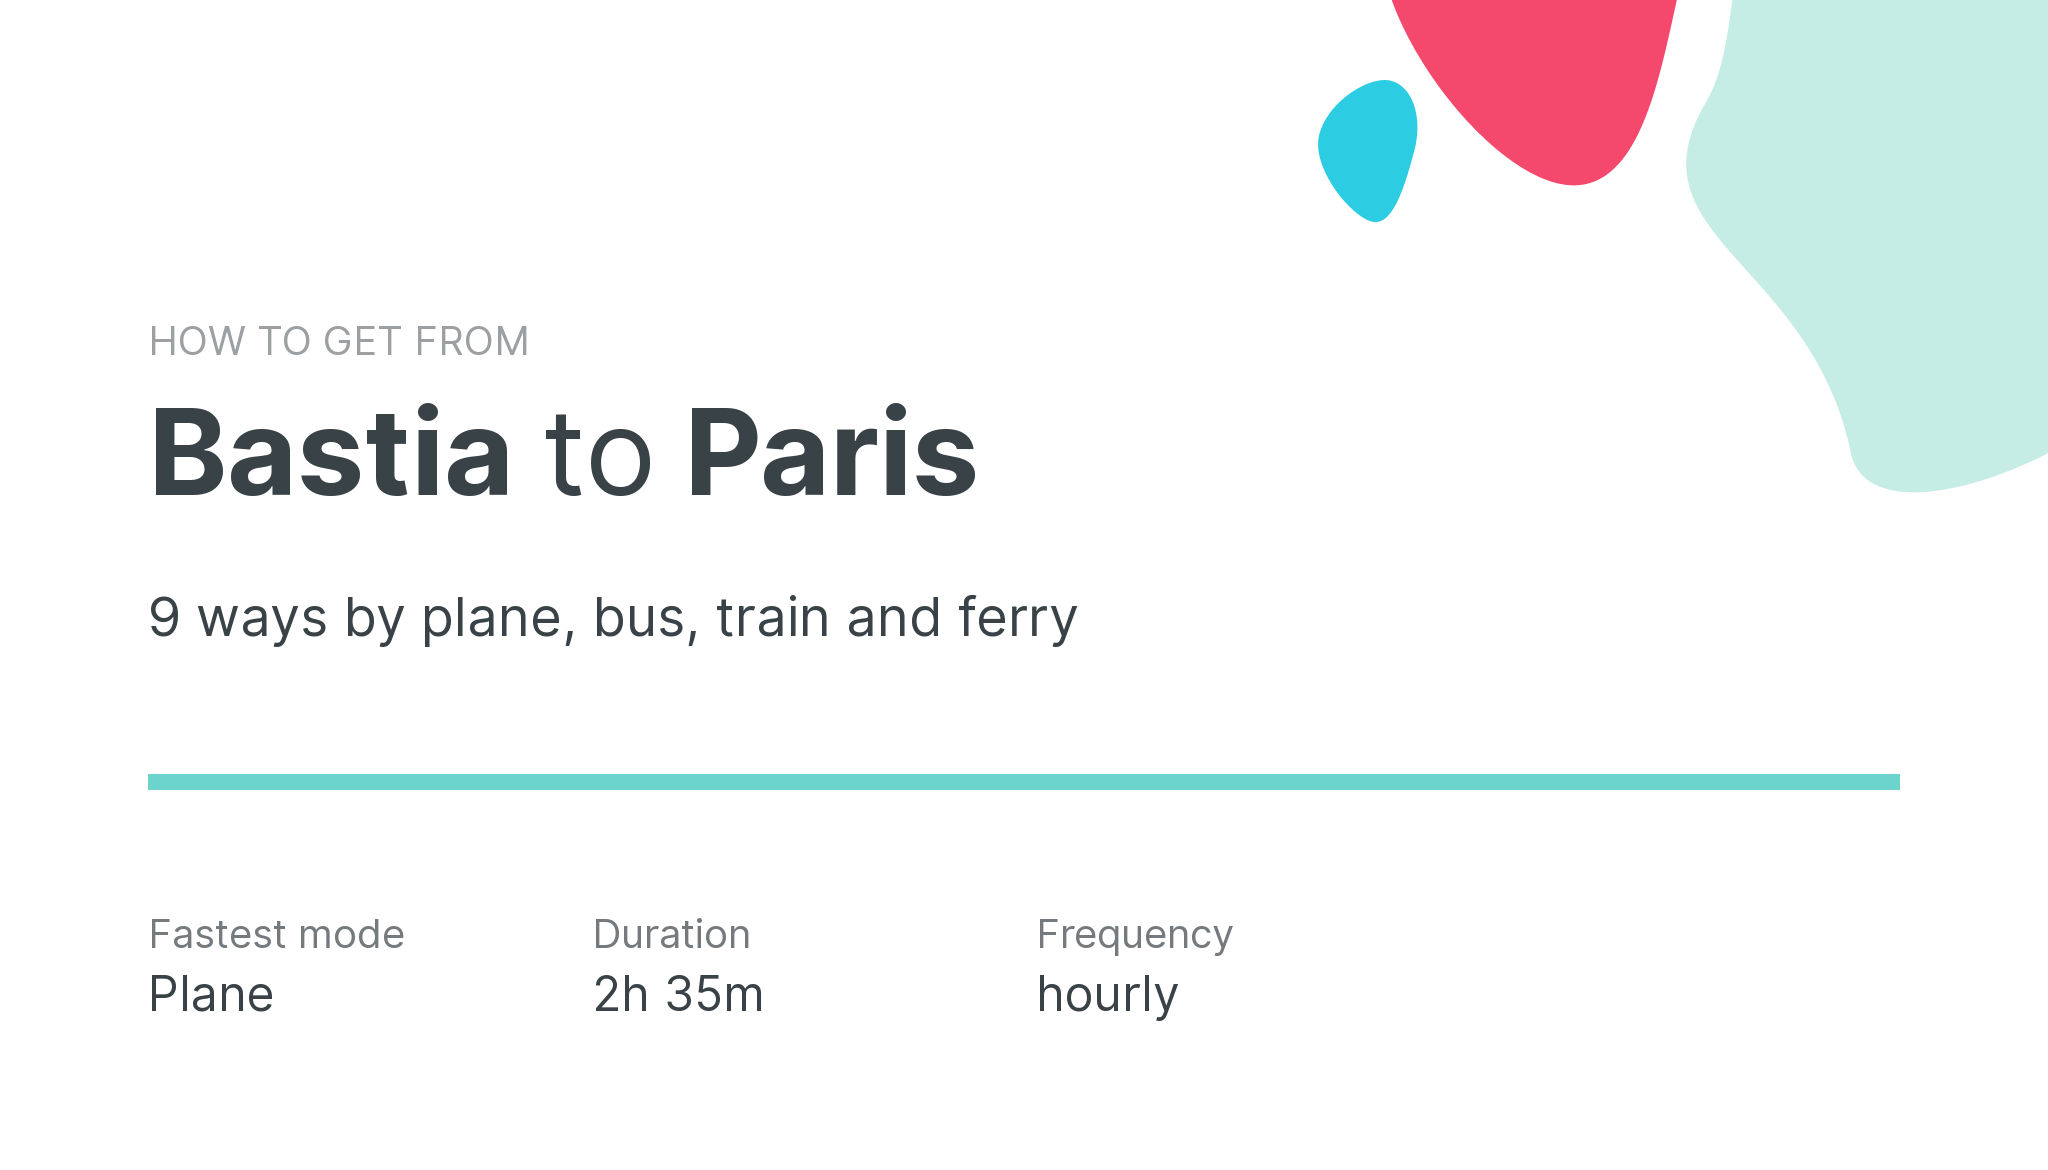 How do I get from Bastia to Paris